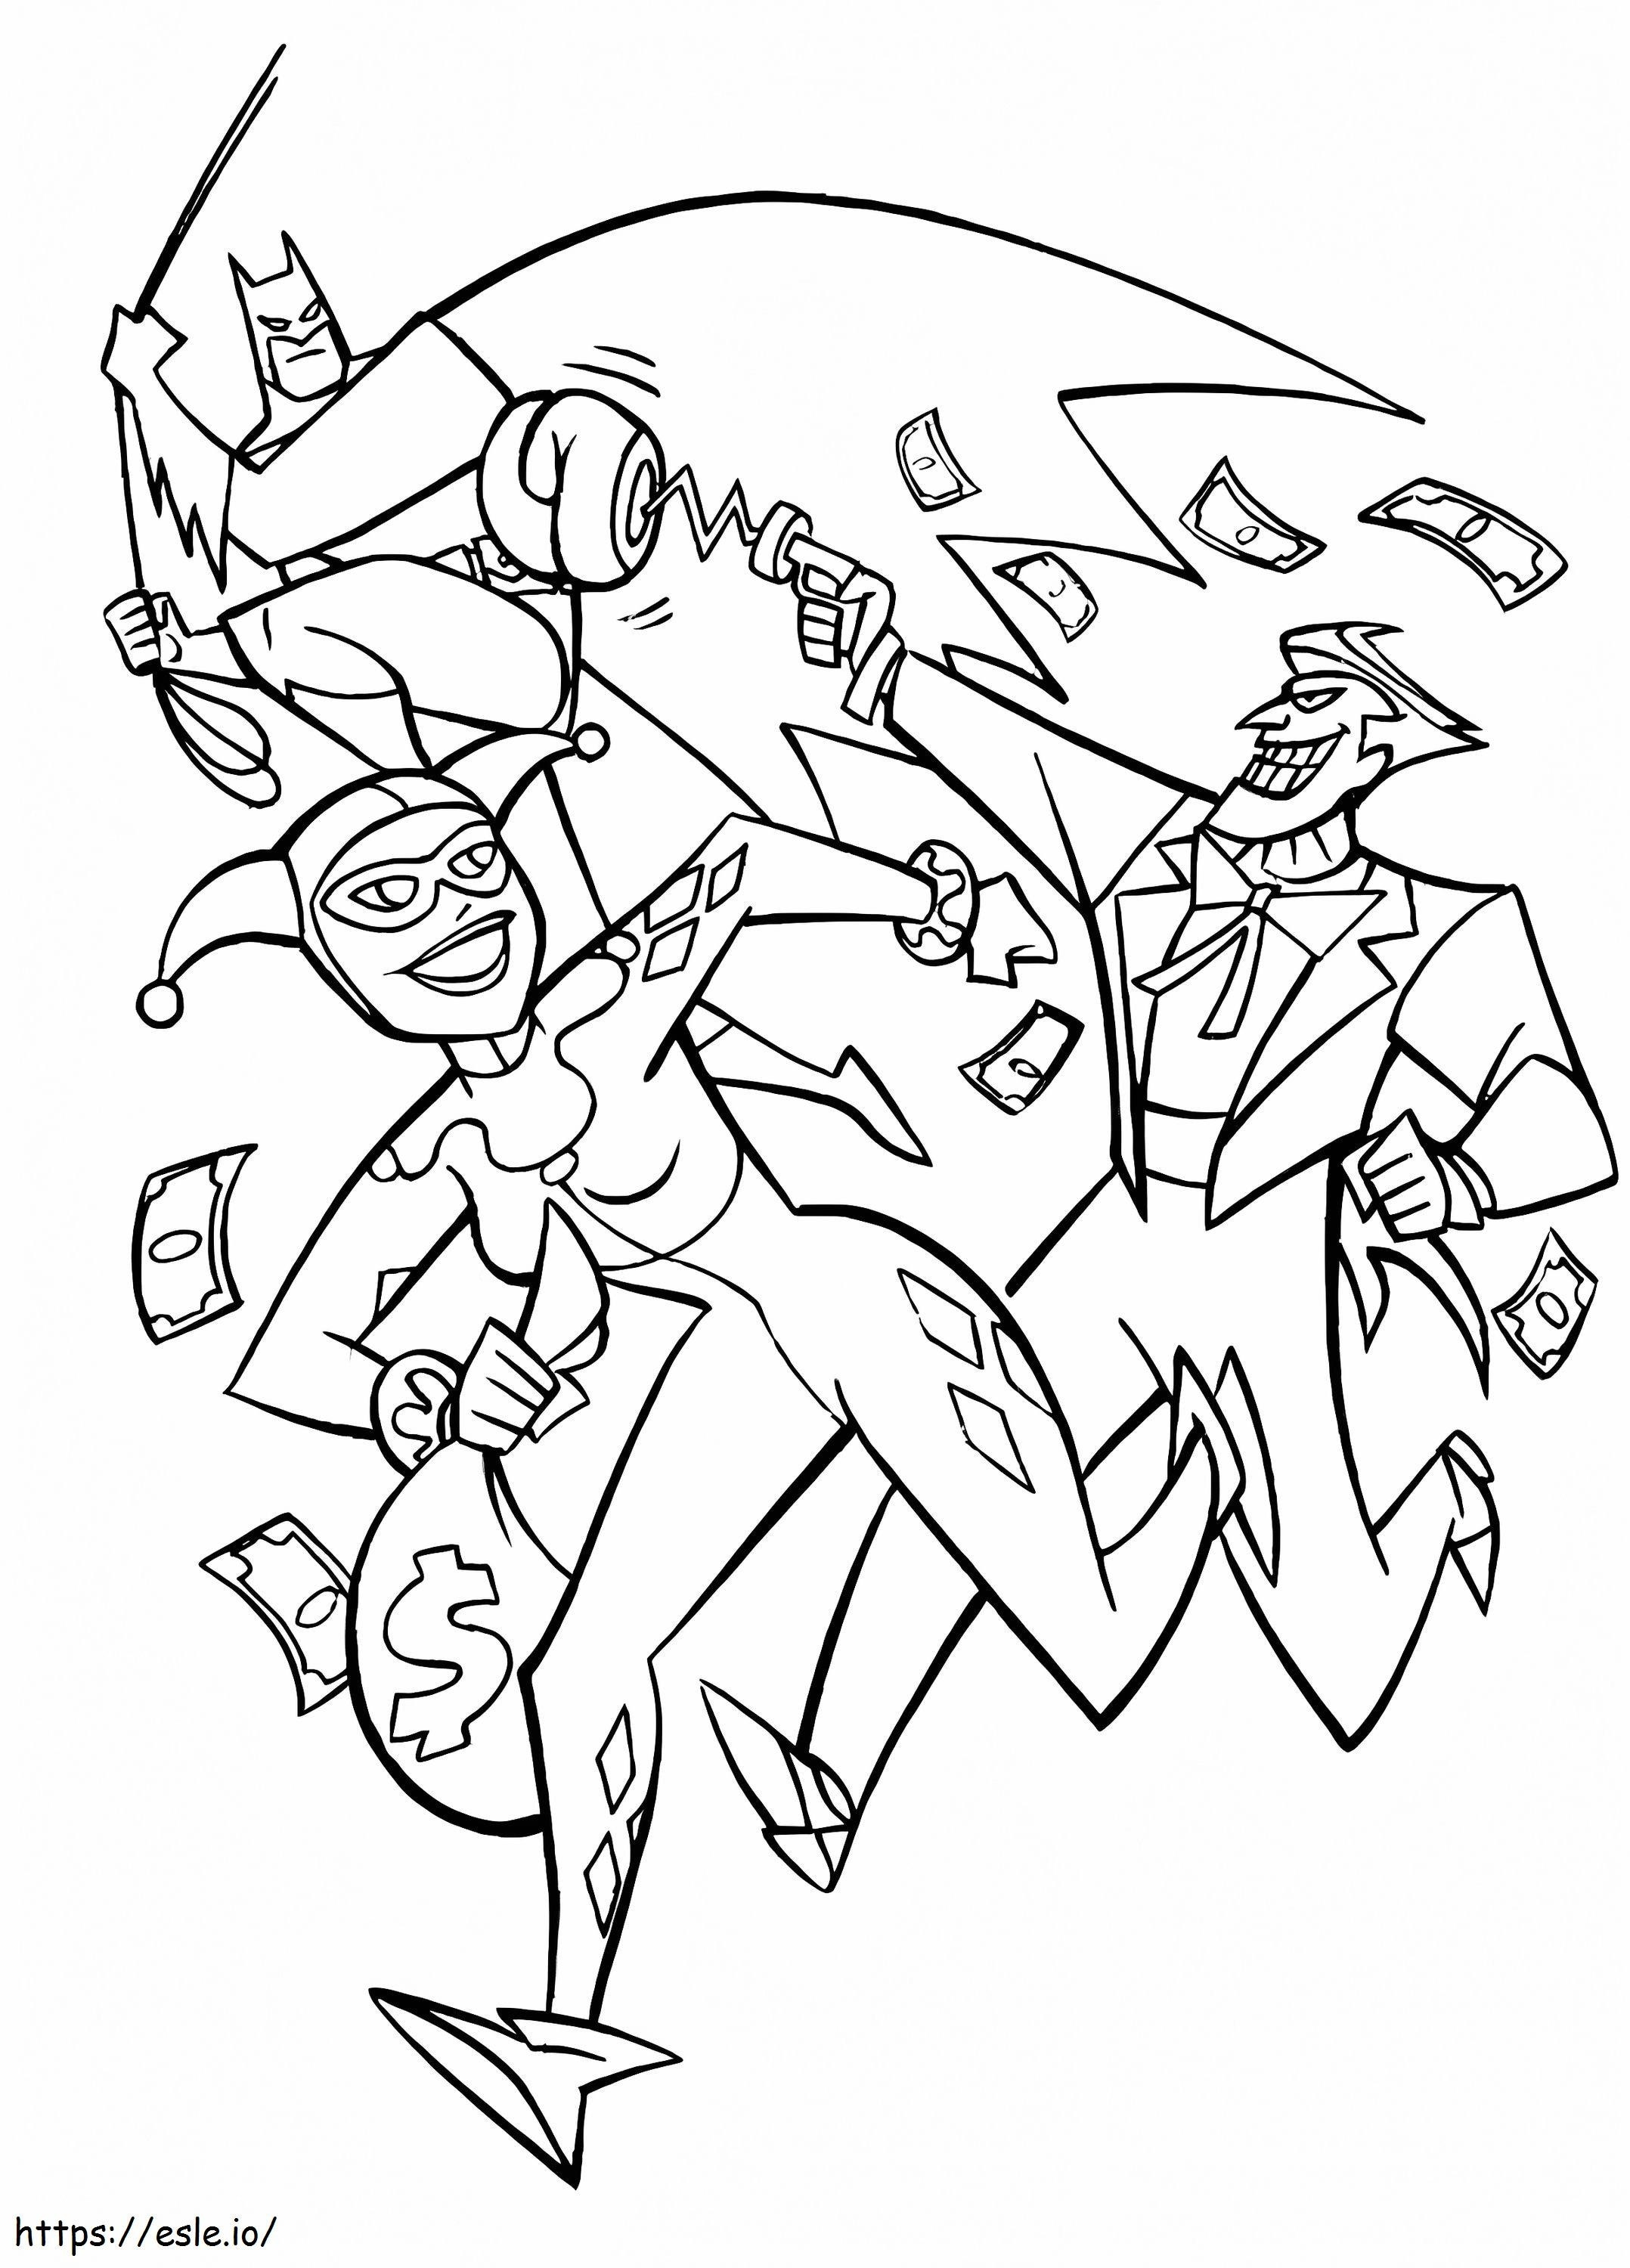 Batman, Harley Quinn ve Joker'in Peşinde boyama